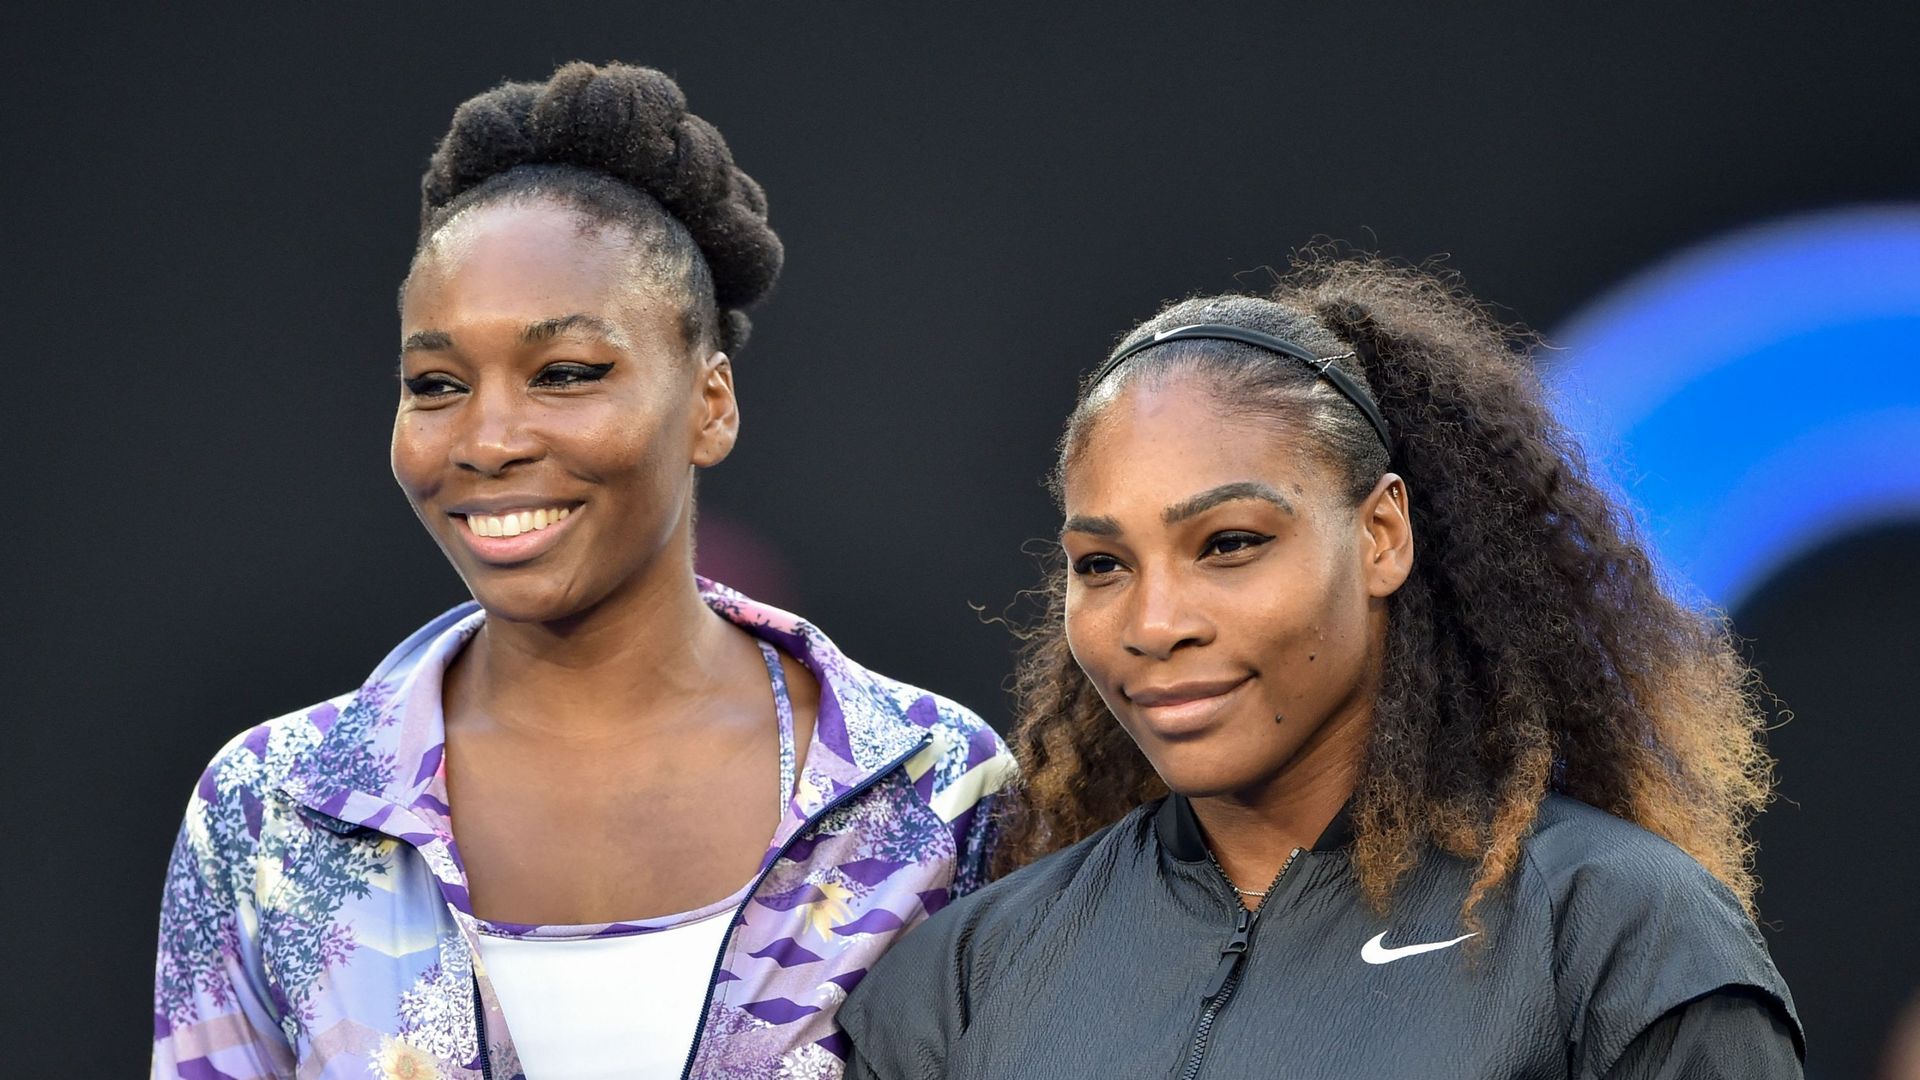 Venus et Serena Williams disputeront le double ensemble à l'US Open.